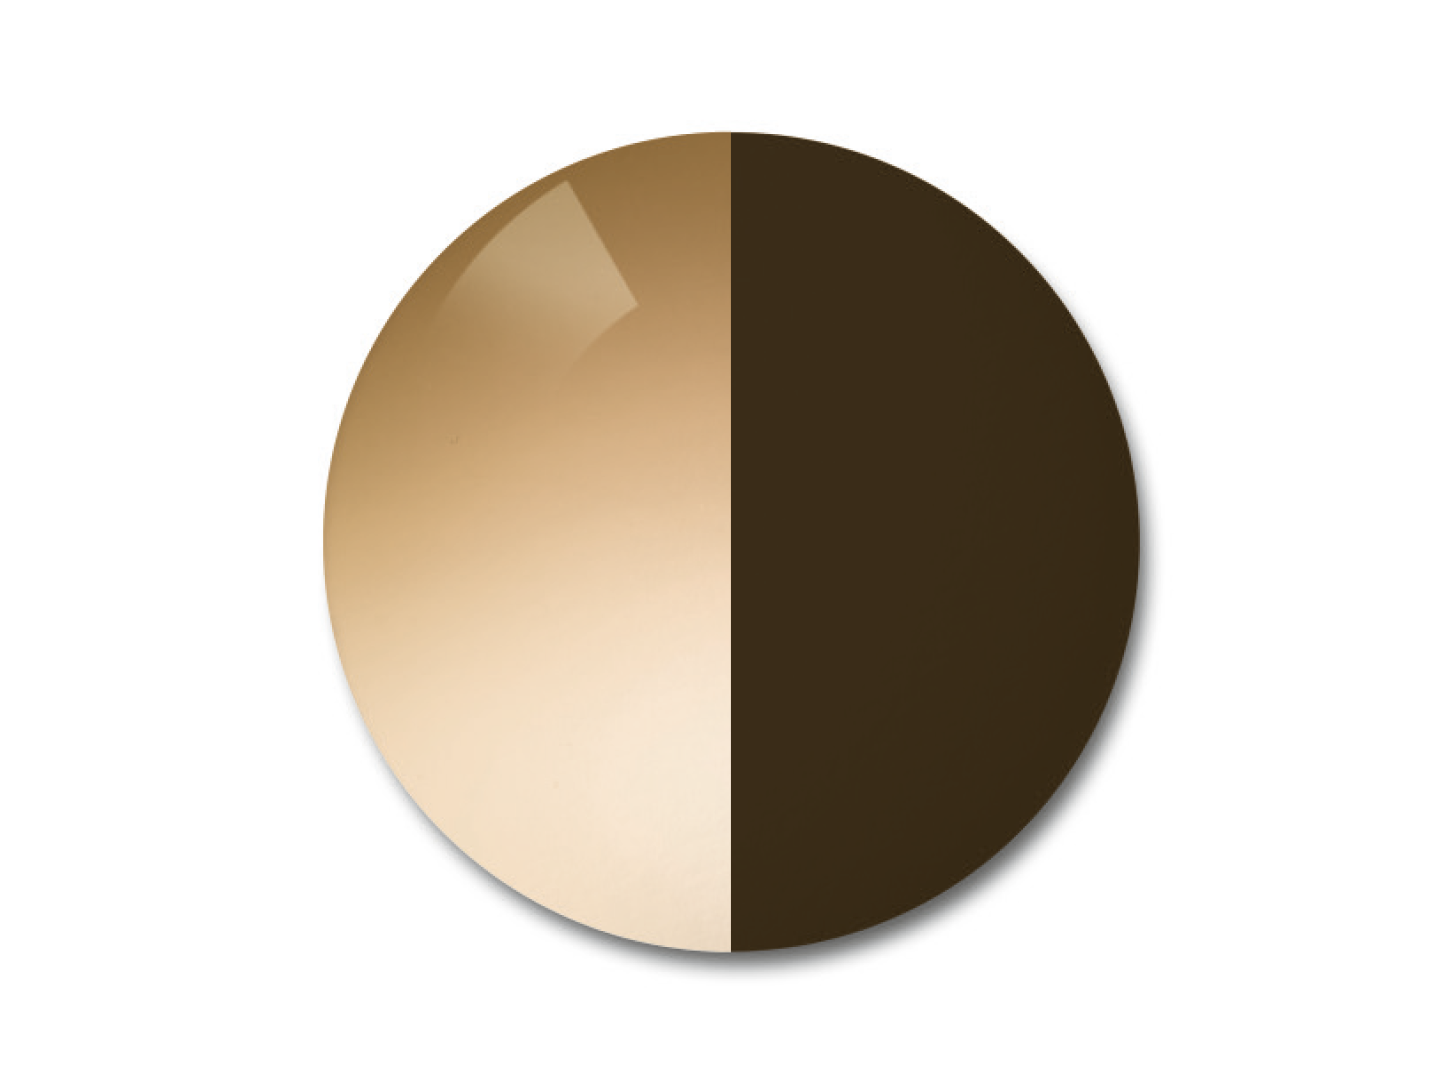 자이스 어댑티브선 변색 렌즈 중 그라데이션 브라운 컬러를 보여주는 이미지